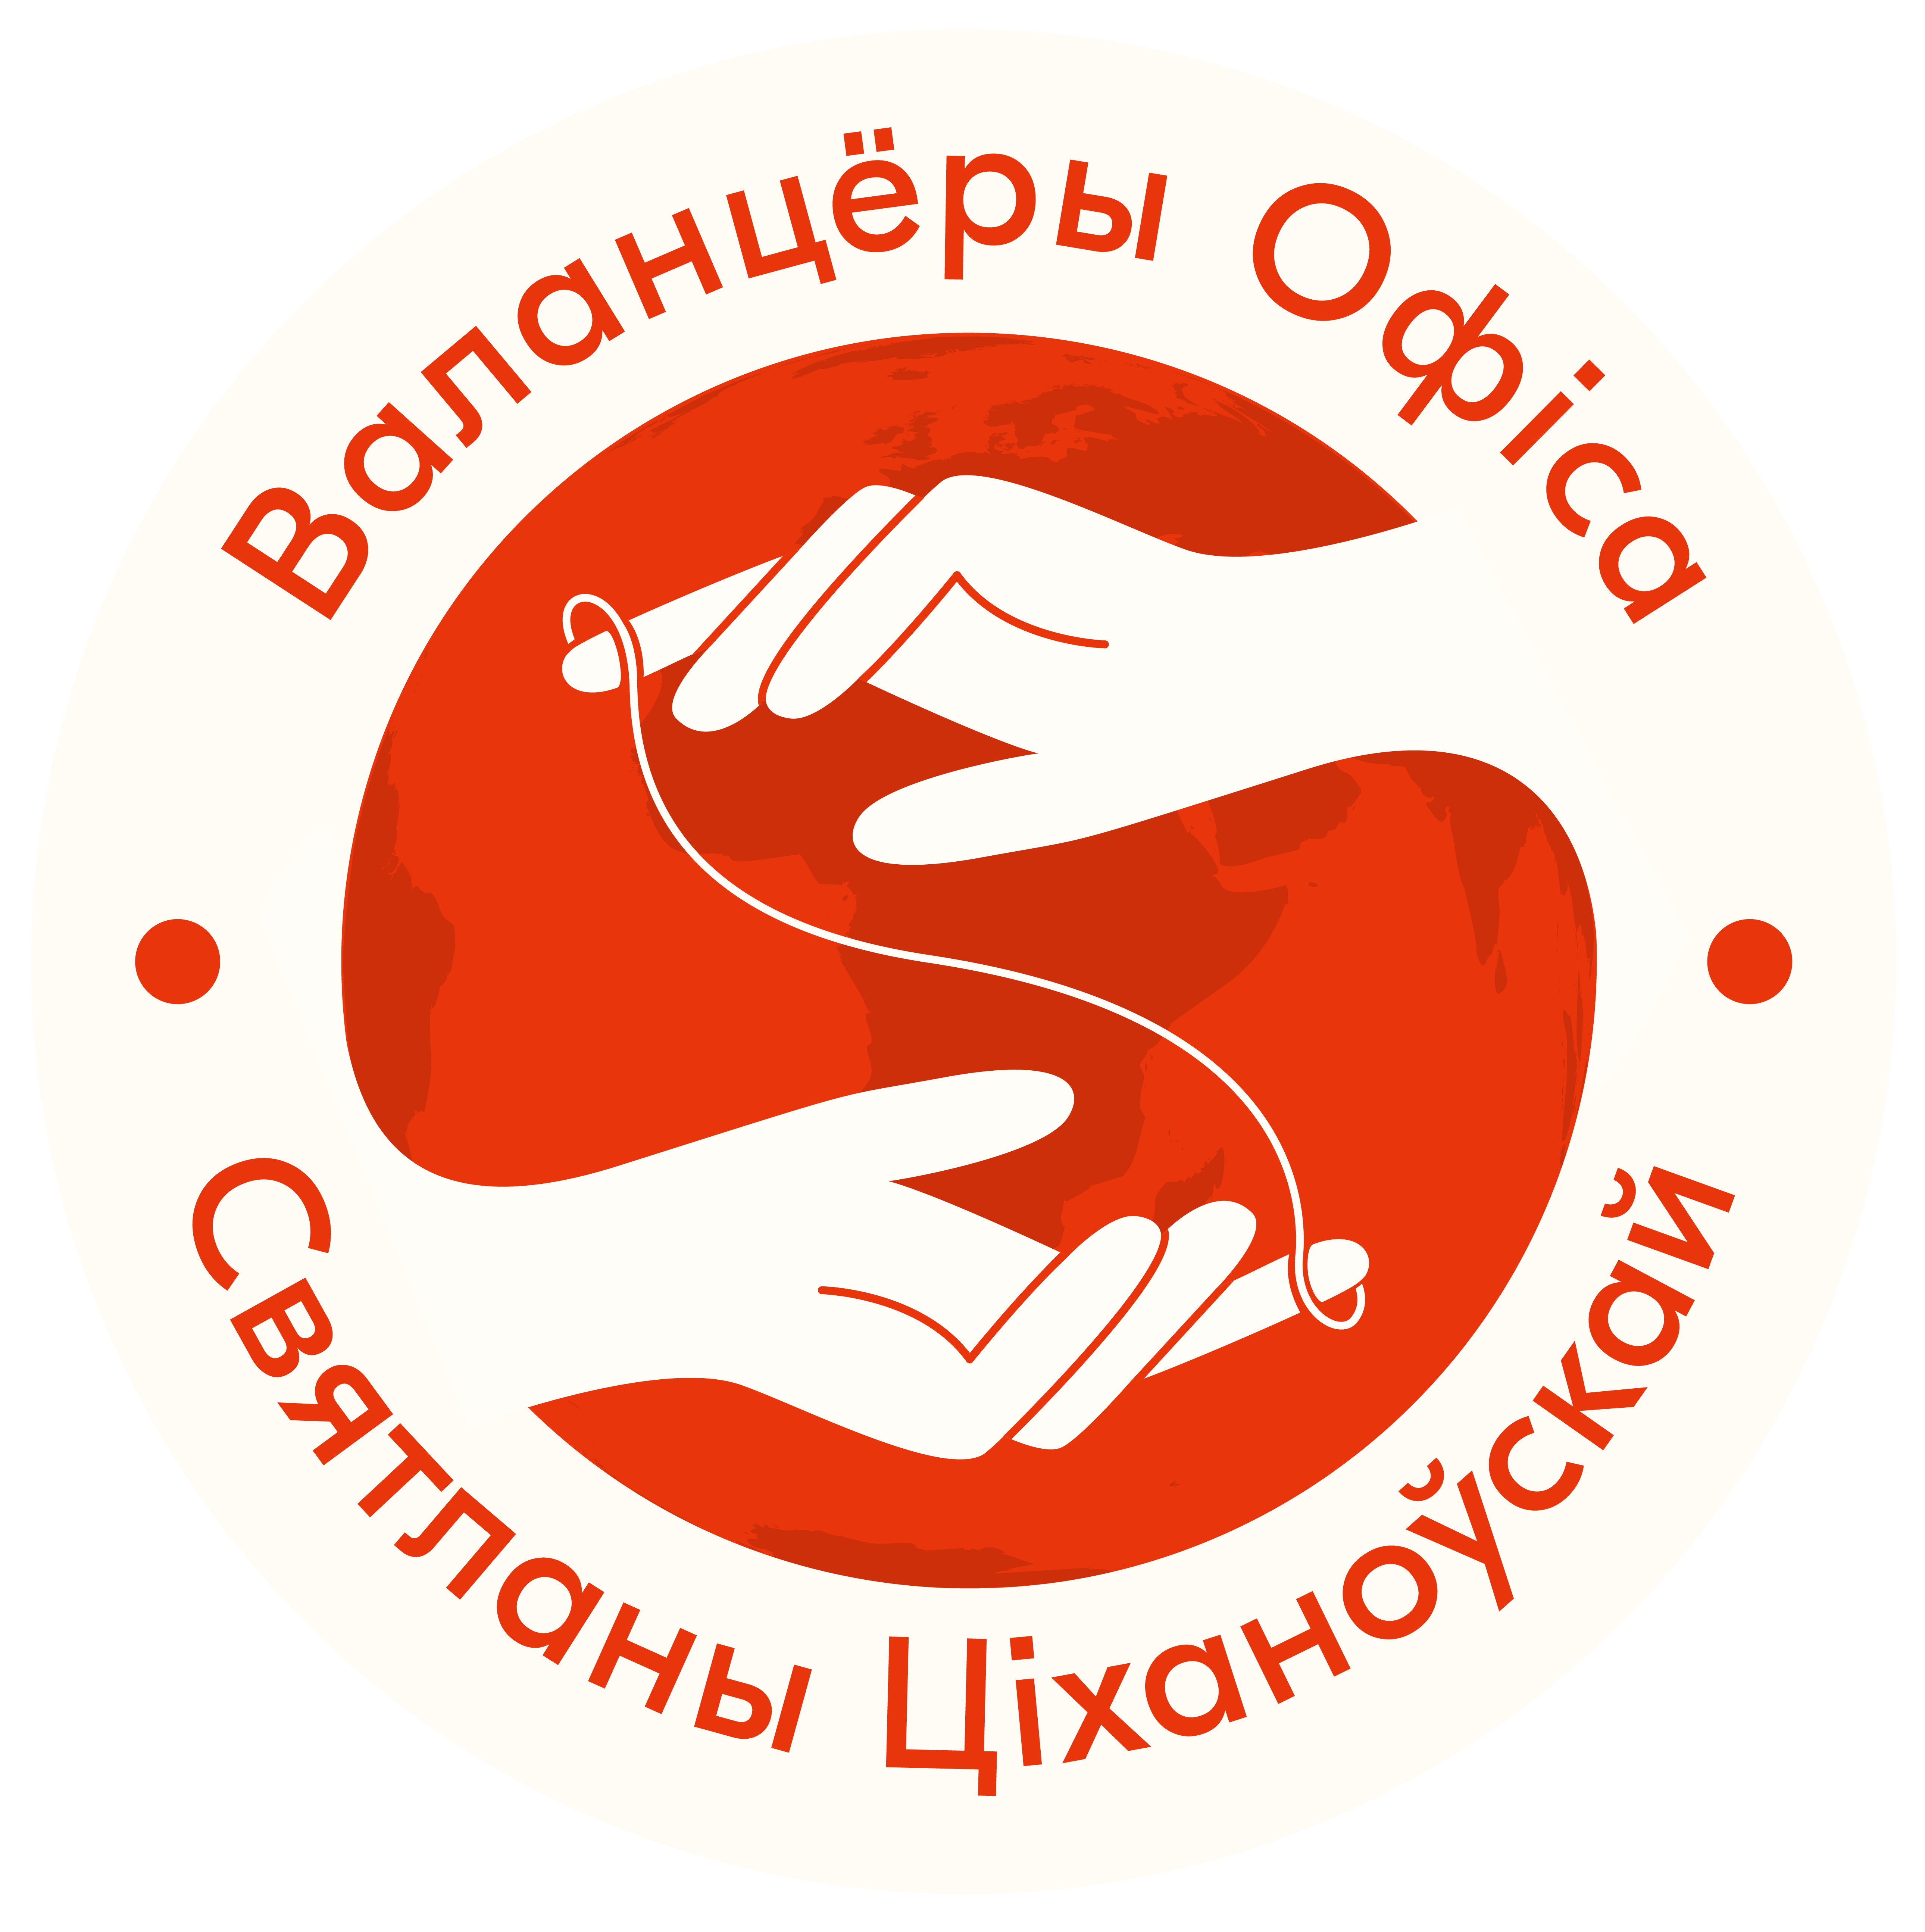 Volunteer Program of Sviatlana Tsikhanouskaya’s Office